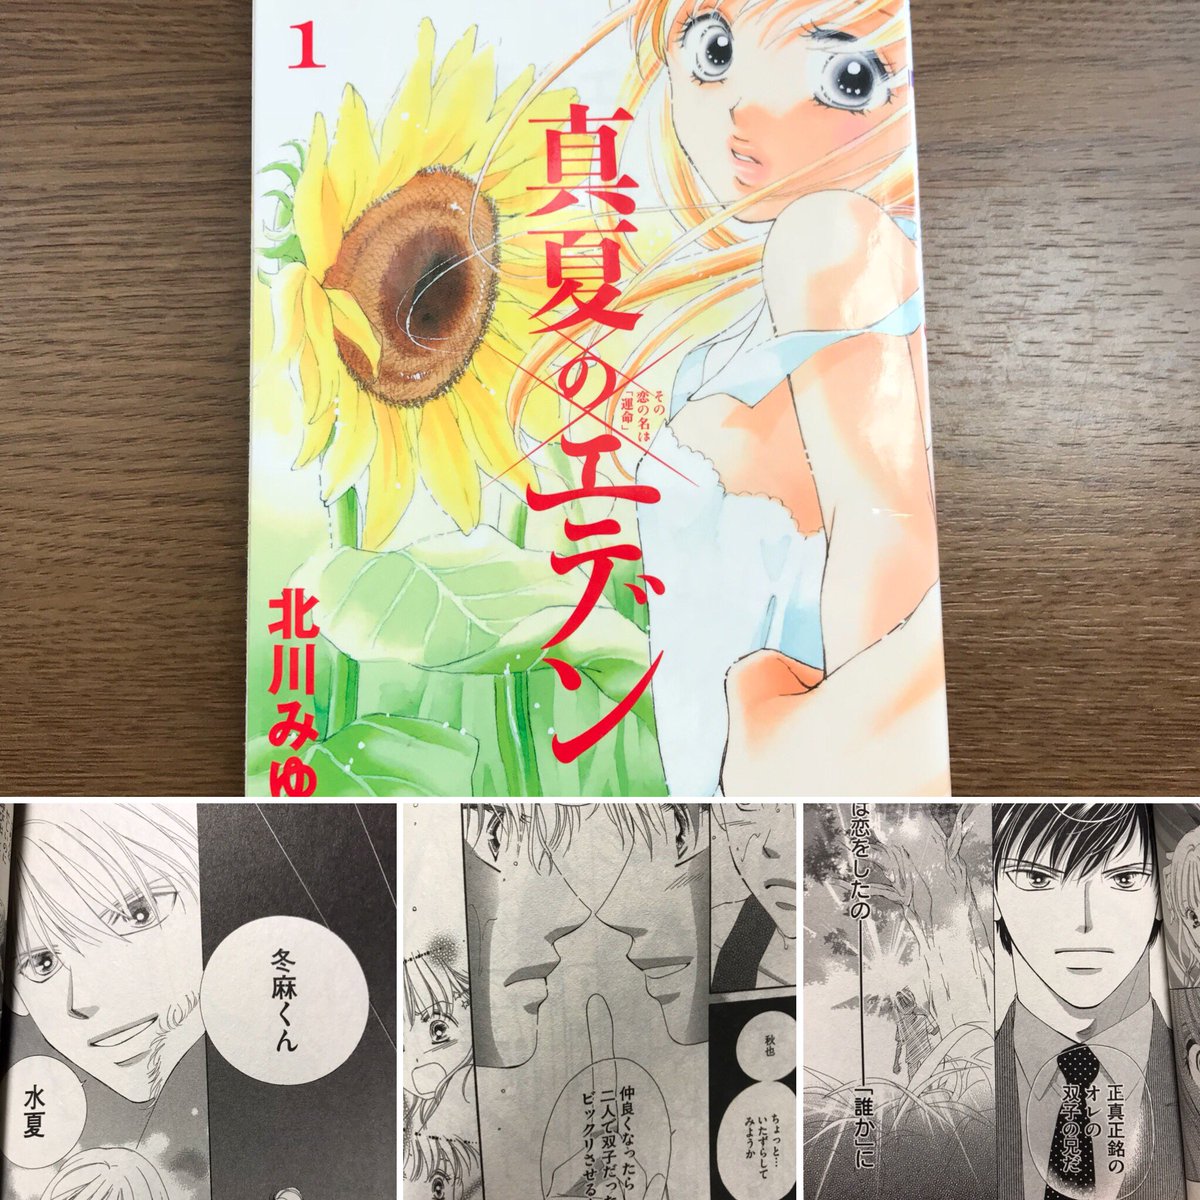 Shimizuho Manga まんが マンガ 漫画 少女漫画 真夏のエデン 北川みゆき先生 6巻完結 もう 東京ジュリエット の頃から好きで作者さん買いしてる先生の1人です 絶対裏切らないい面白さ まだまだあるんでまたツイートします T Co